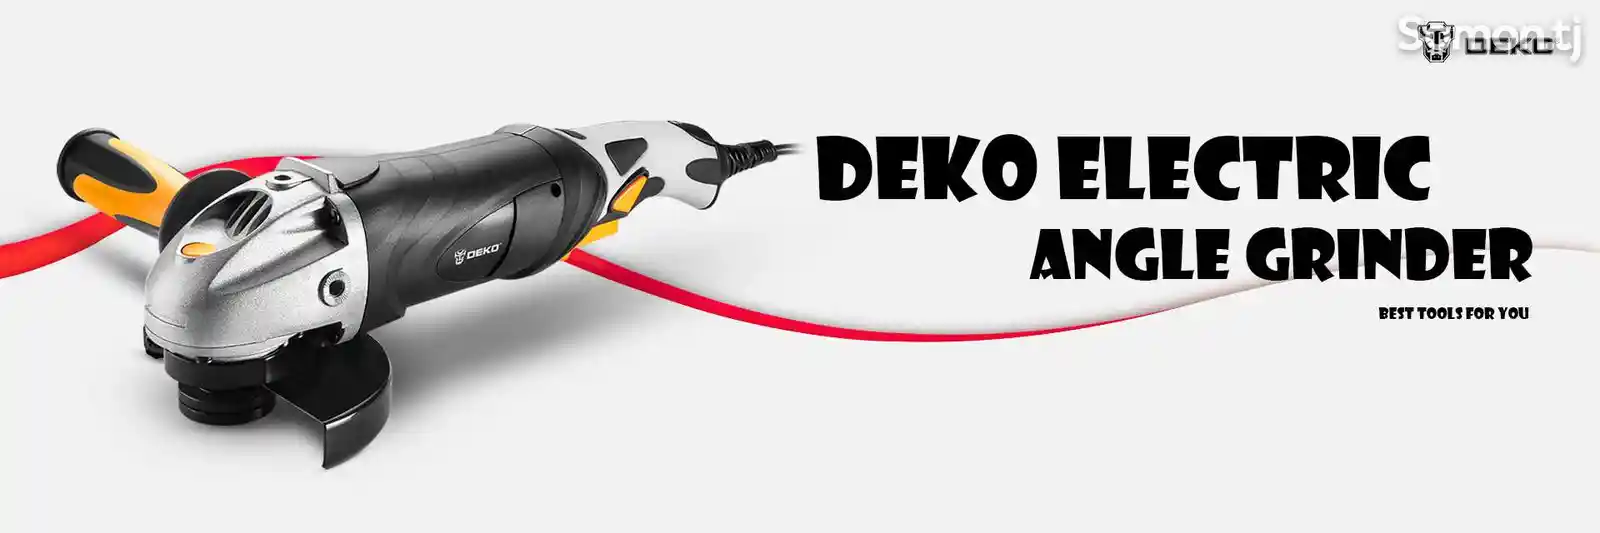 Углошлифовальная машина Deko DKAG25LD1 710W-8